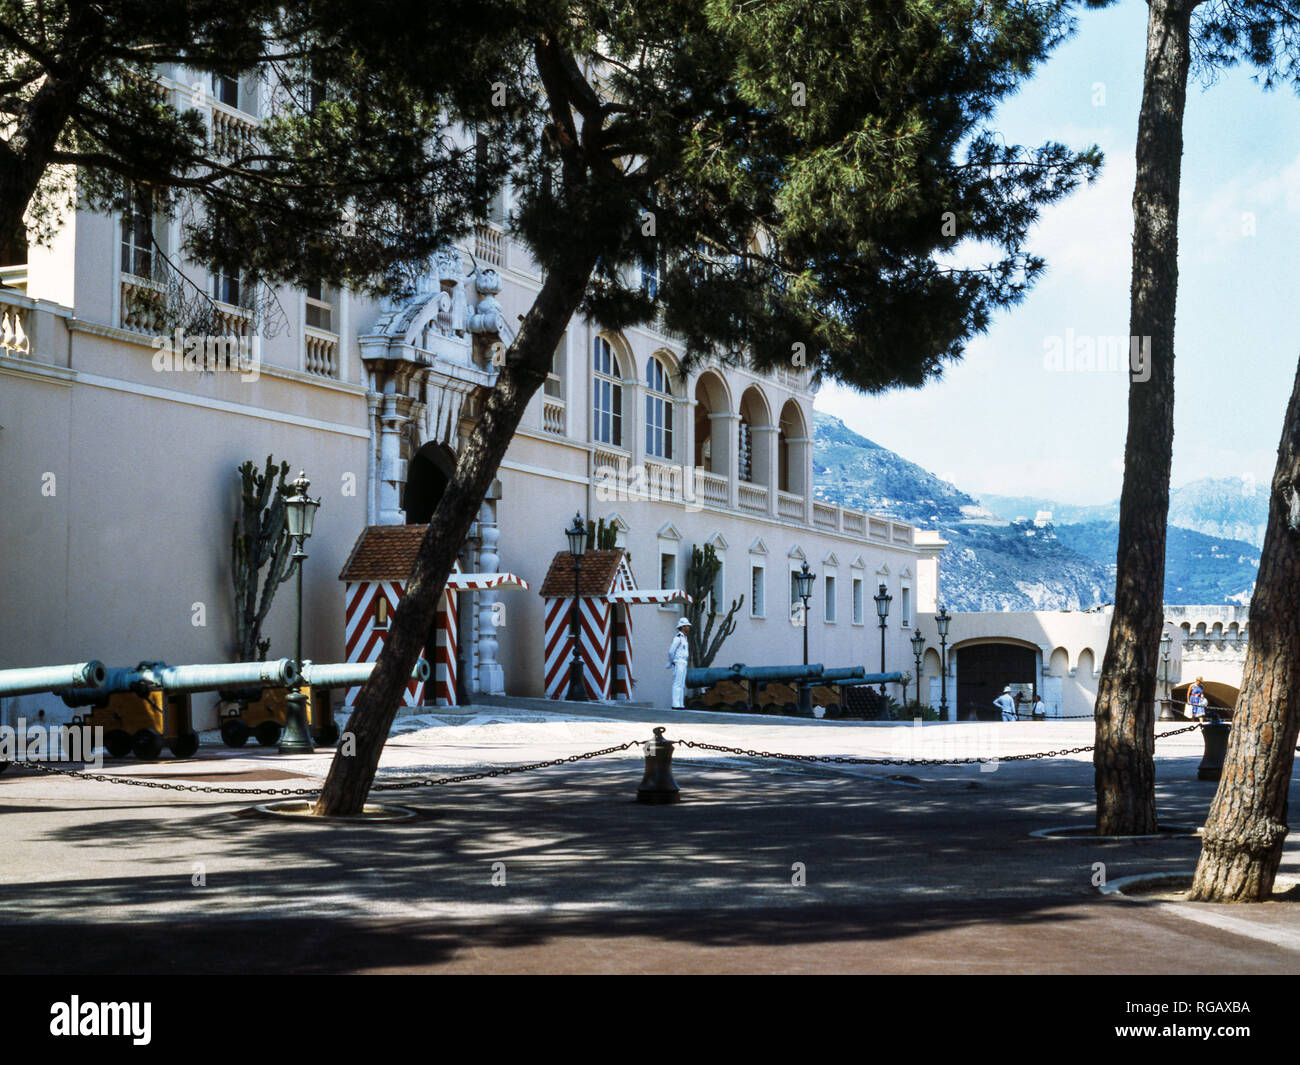 Frankreich. Monaco. Monte-Carlo. Französische Riviera. Der Palastplatz mit dem Königspalast und einem Open-Air-Café-Restaurant. Stockfoto